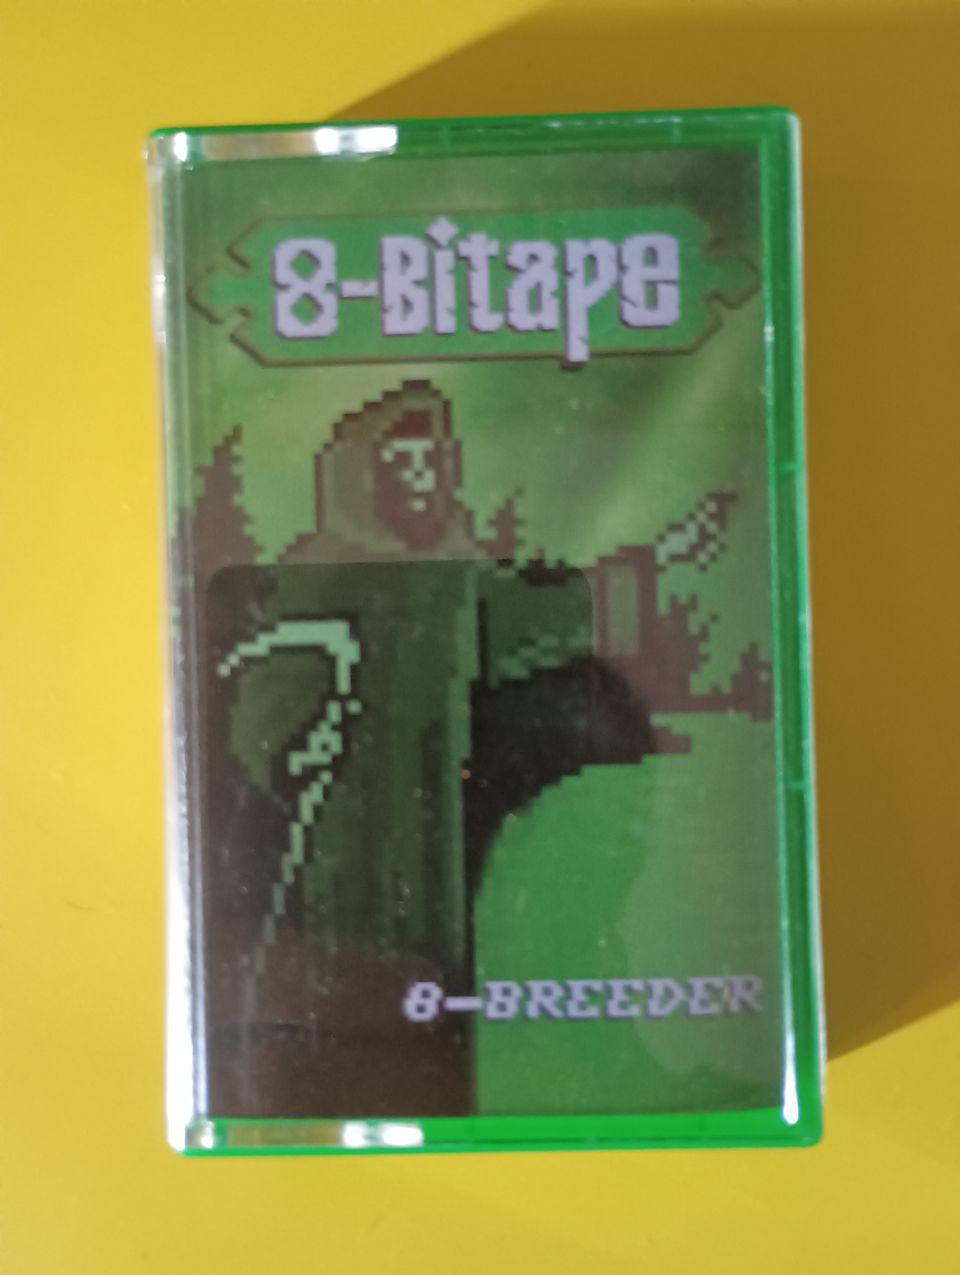 8-Bitape - 8-Breeder C-kasetti